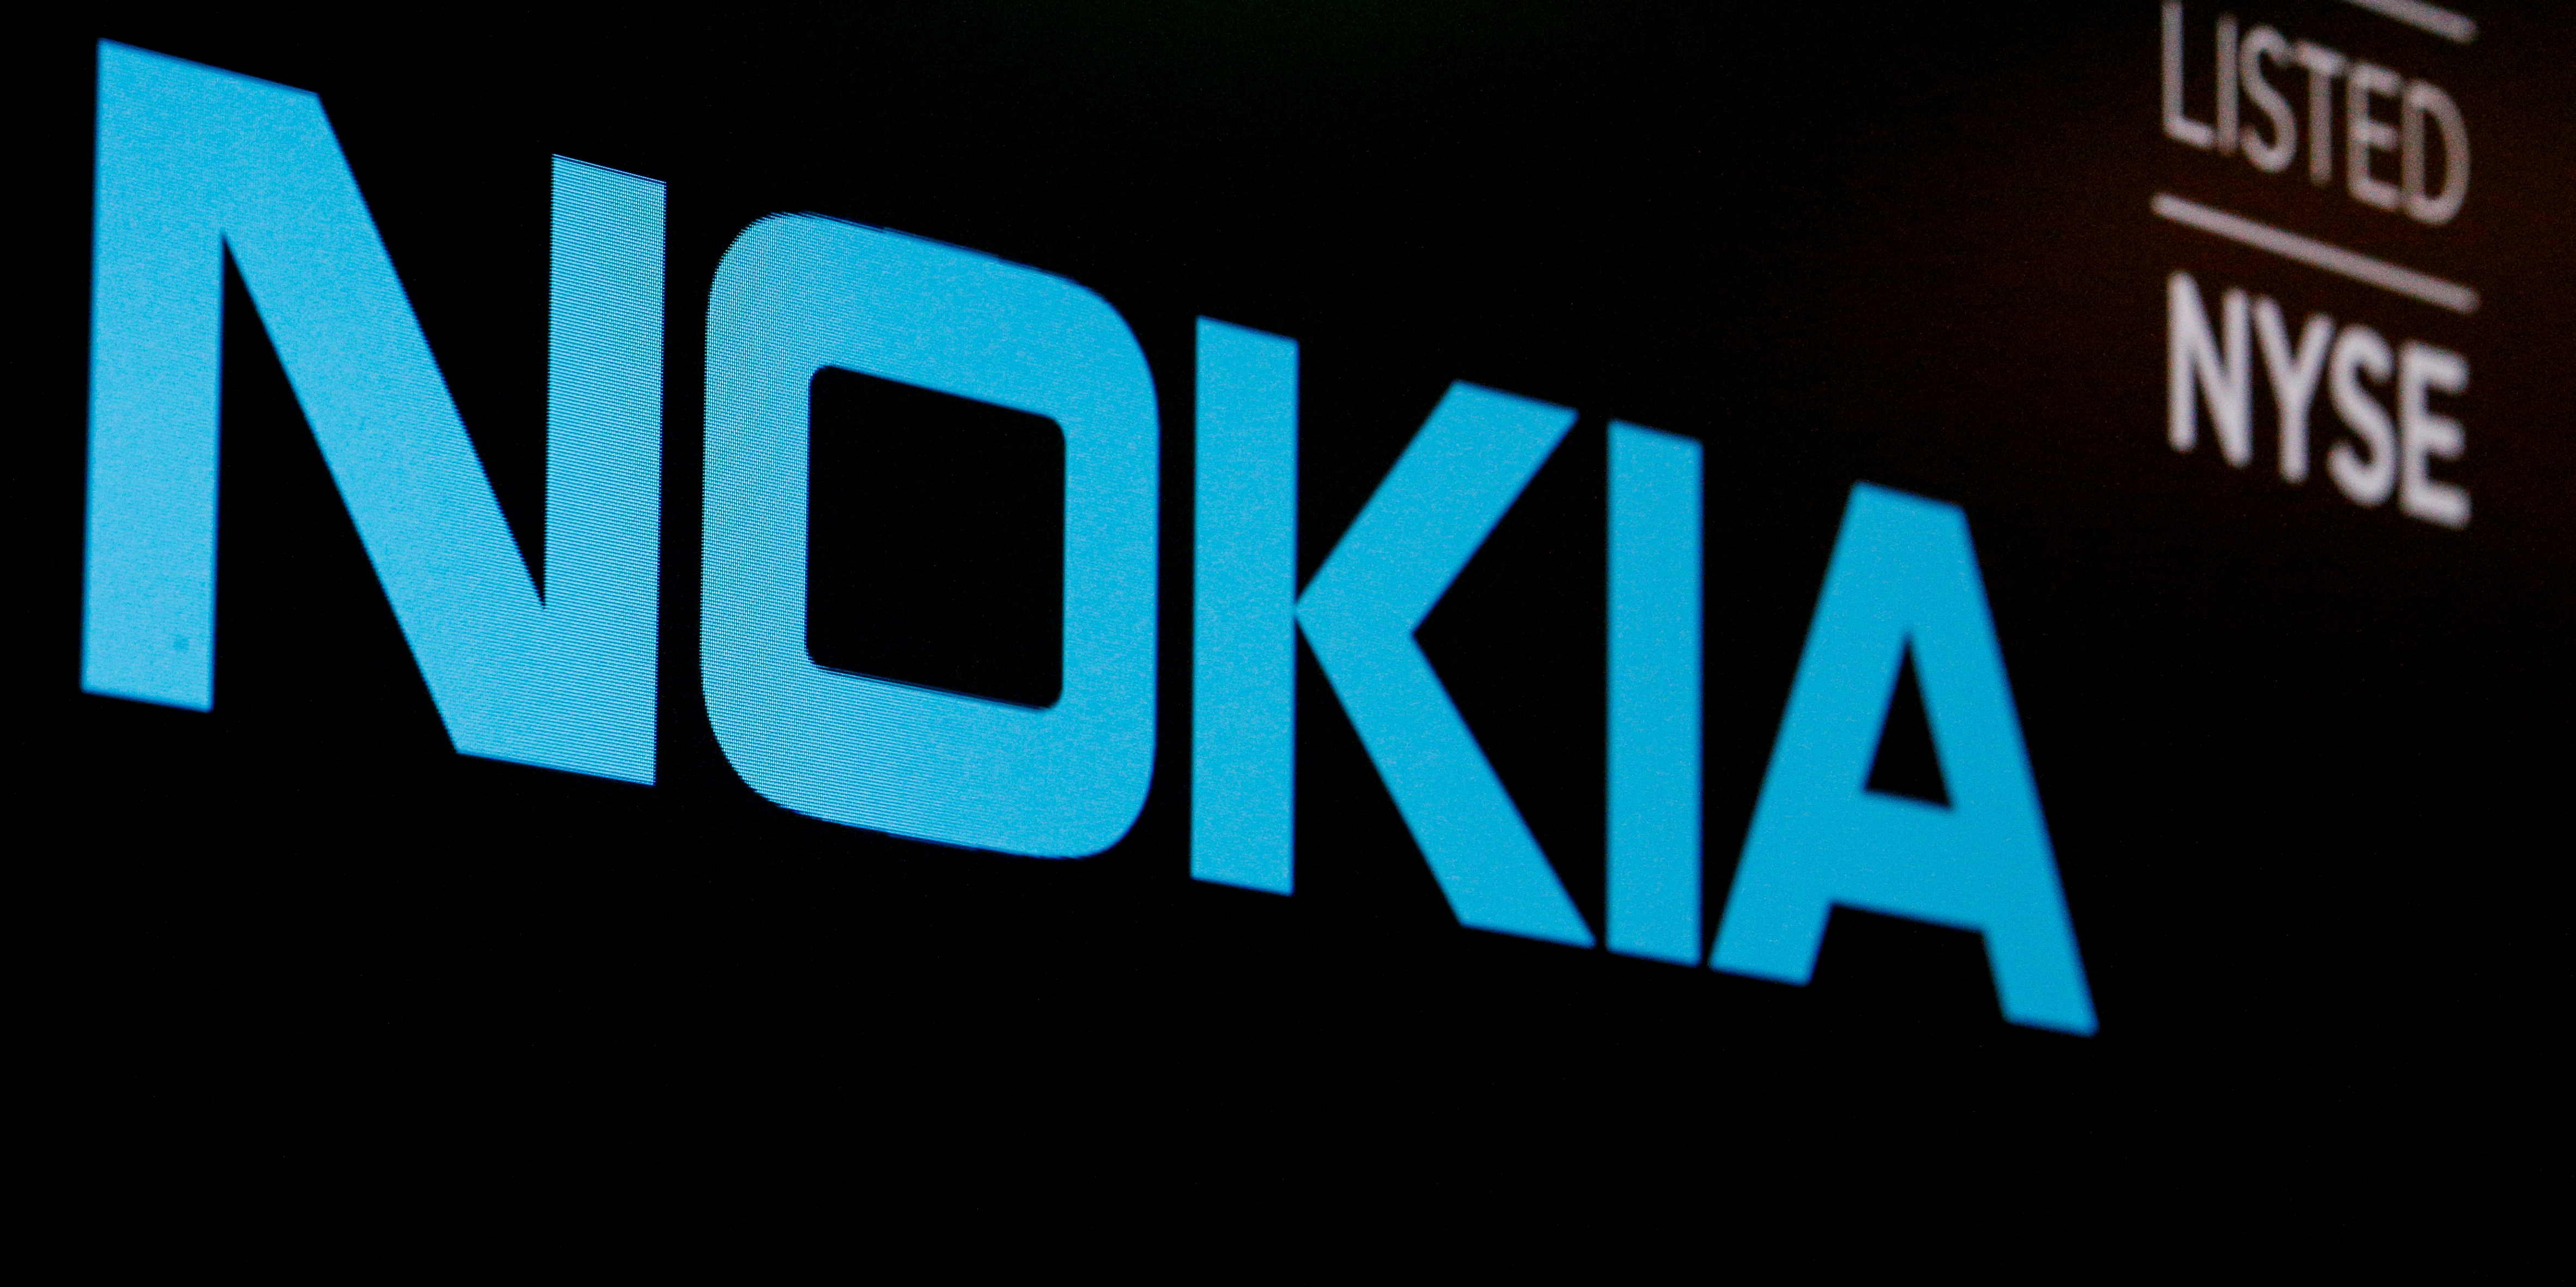 Nokia revoit ses prévisions à la baisse et dégringole en Bourse